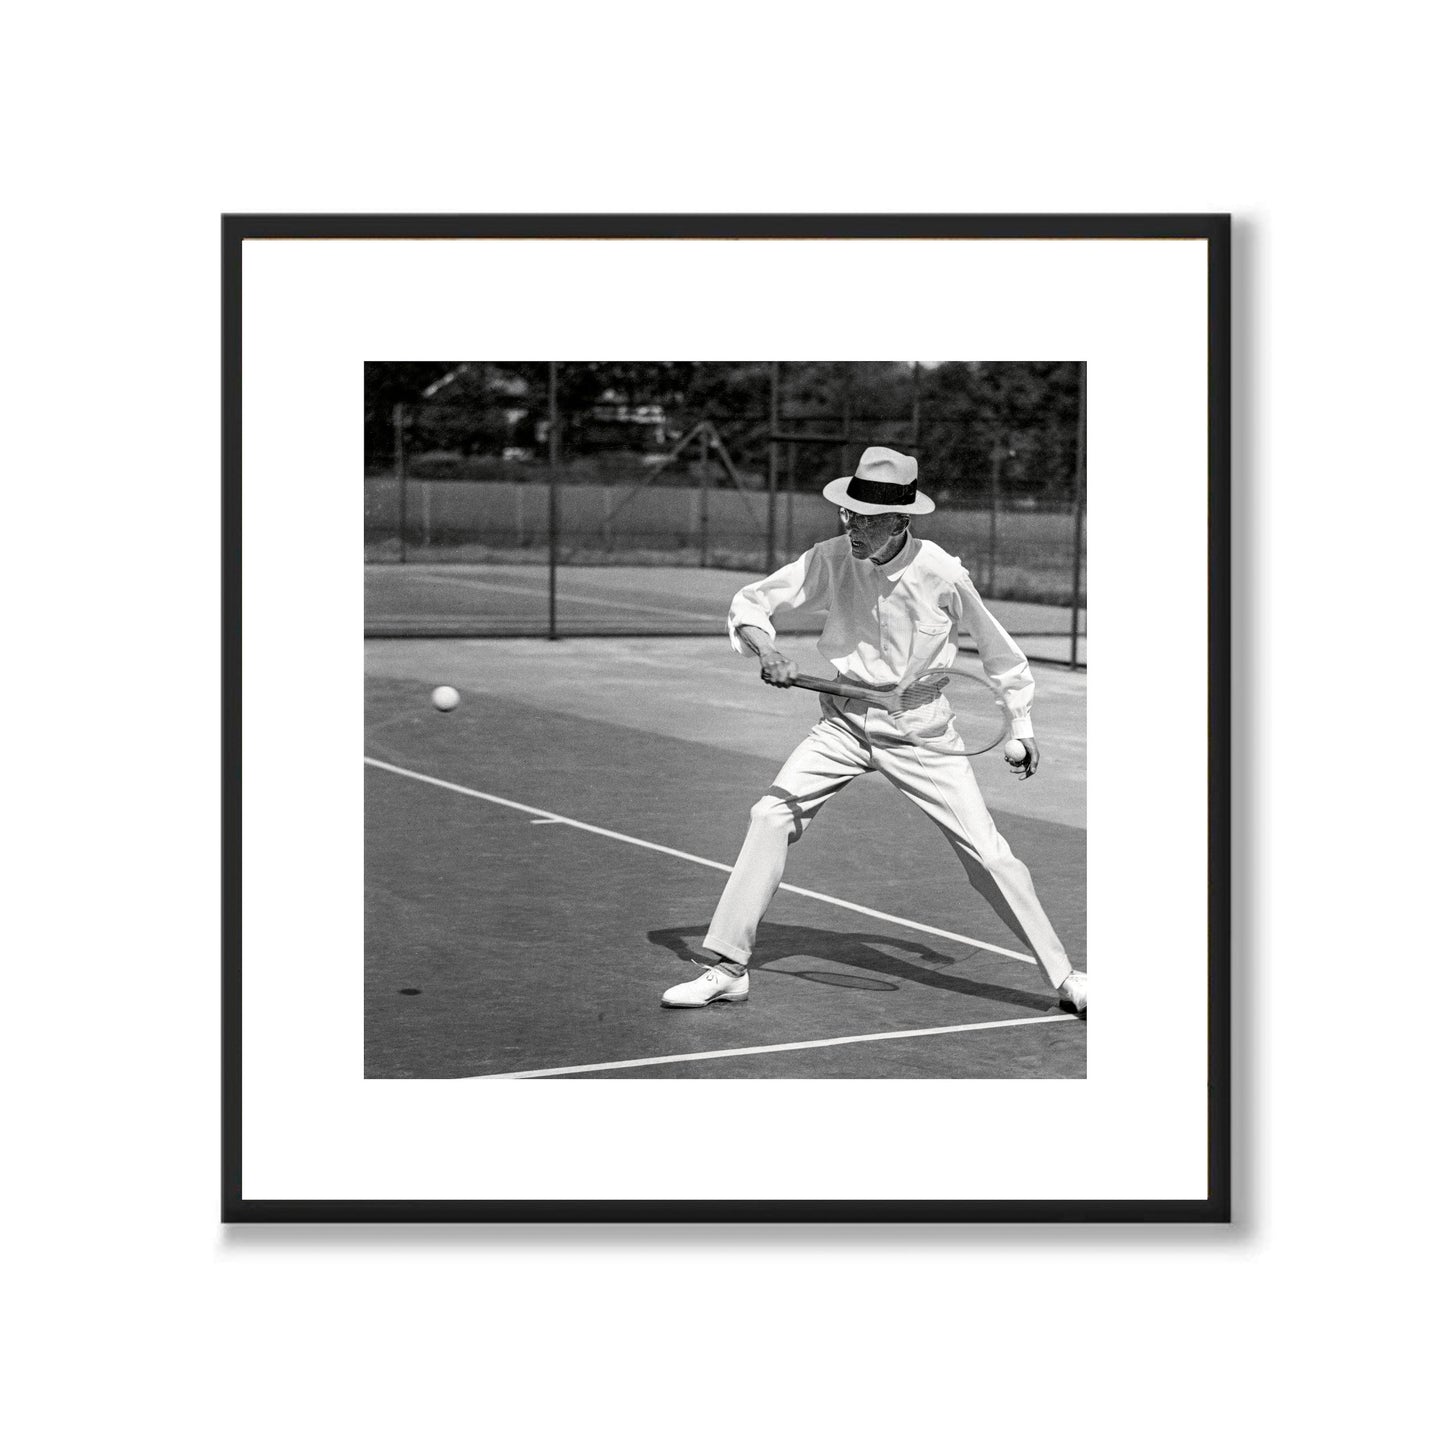 Gustaf V spelar tennis